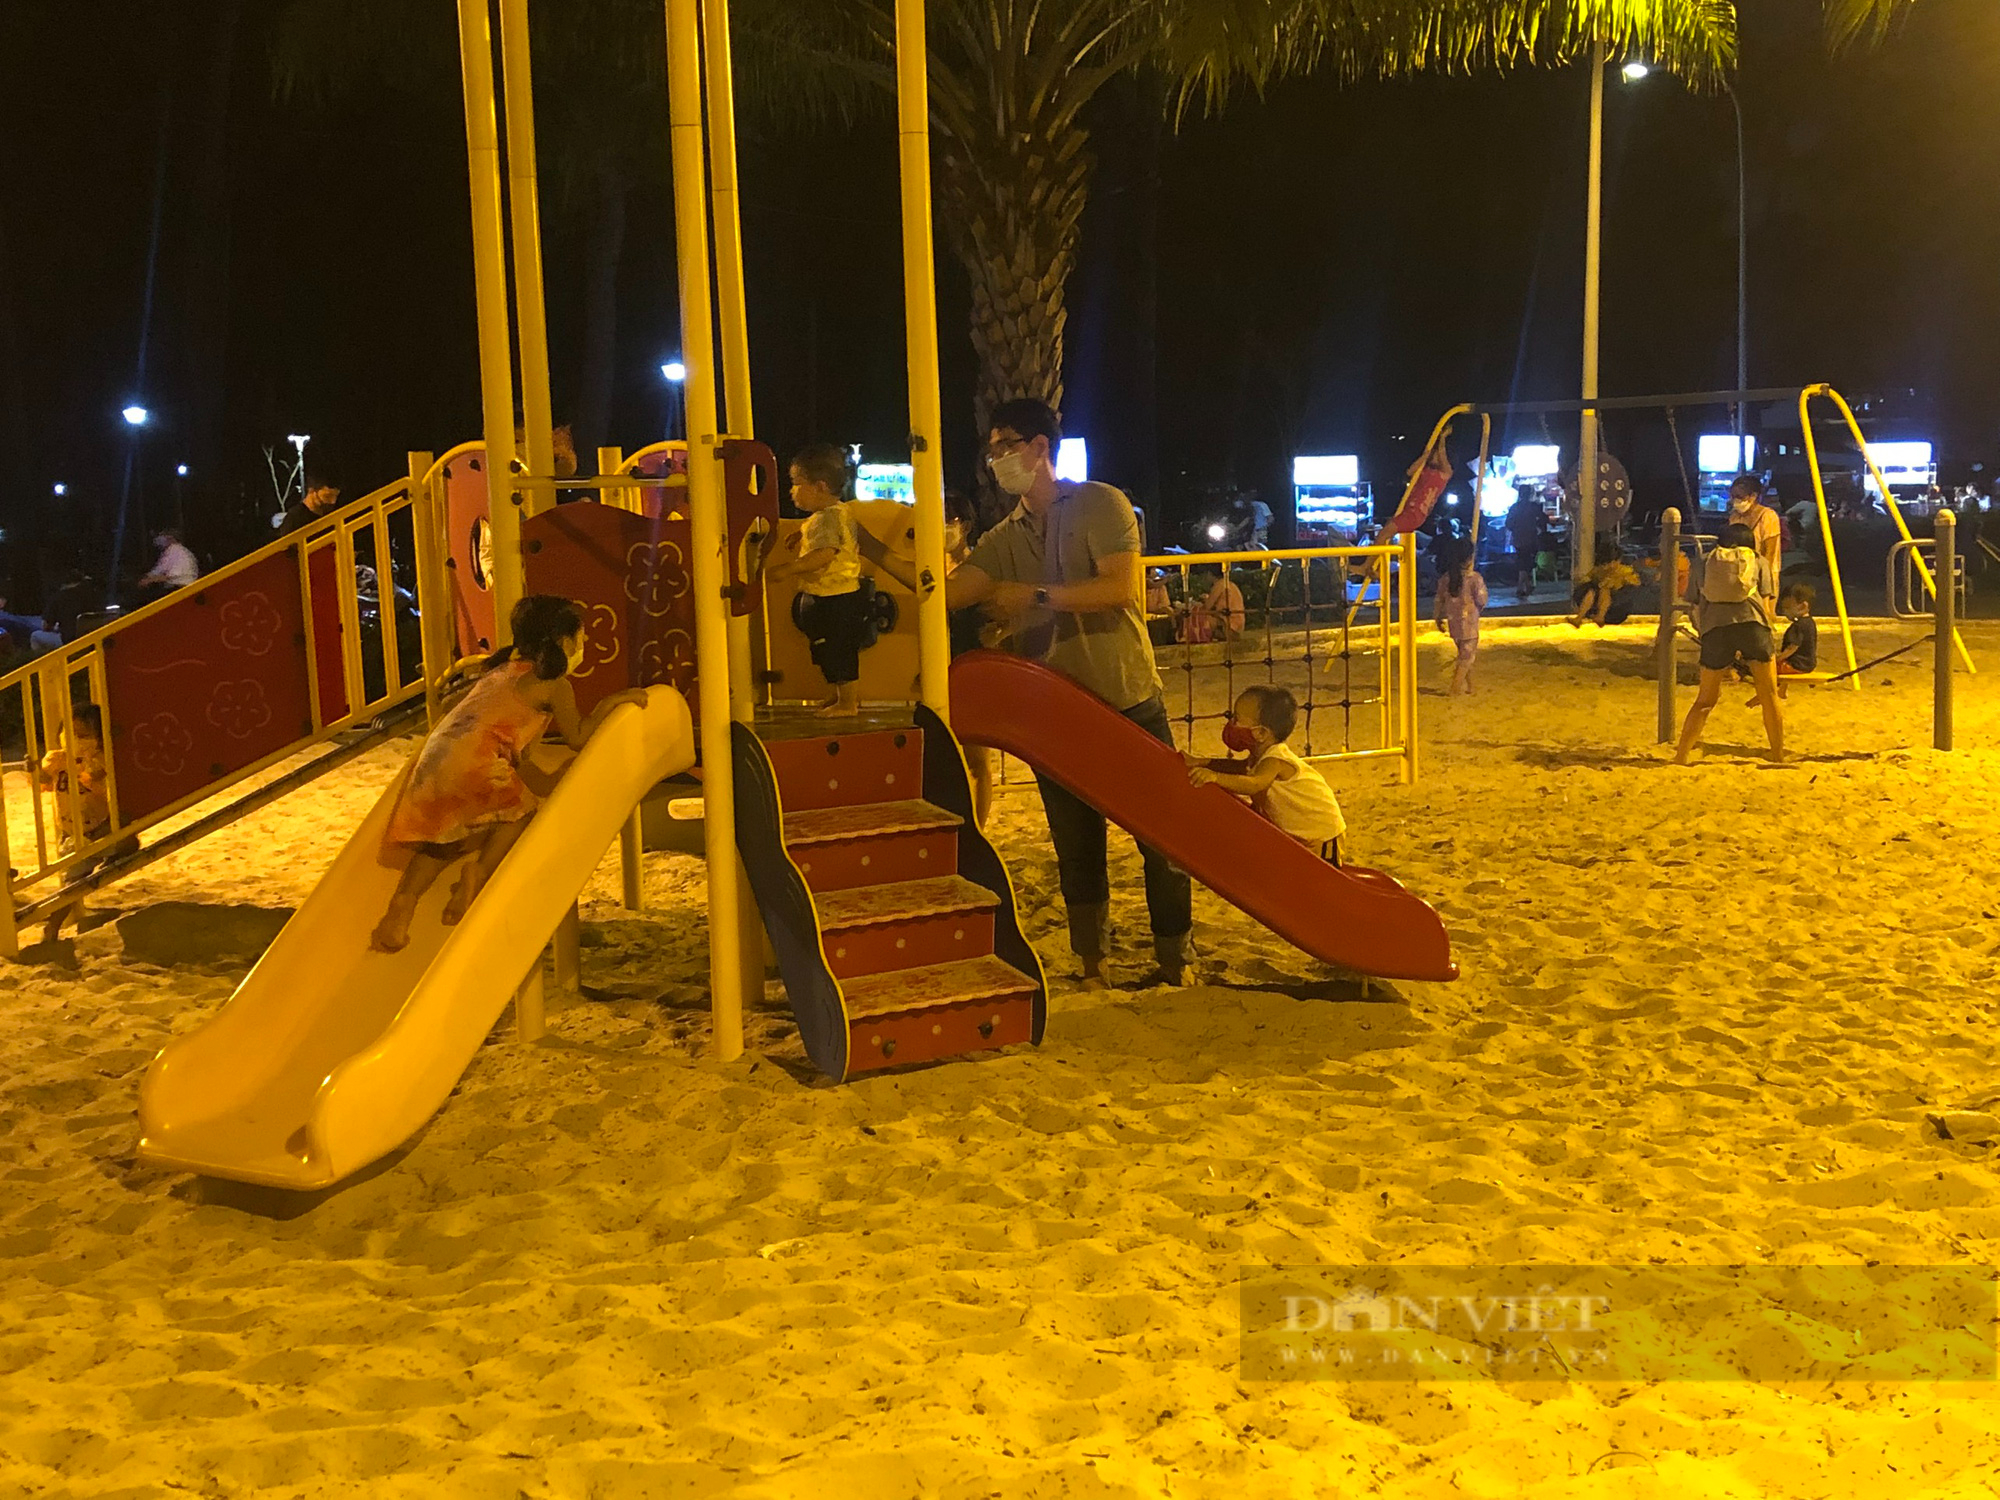 Ghé công viên hiếm hoi có bãi cát vàng cho trẻ em vui chơi thỏa thích - Ảnh 4.